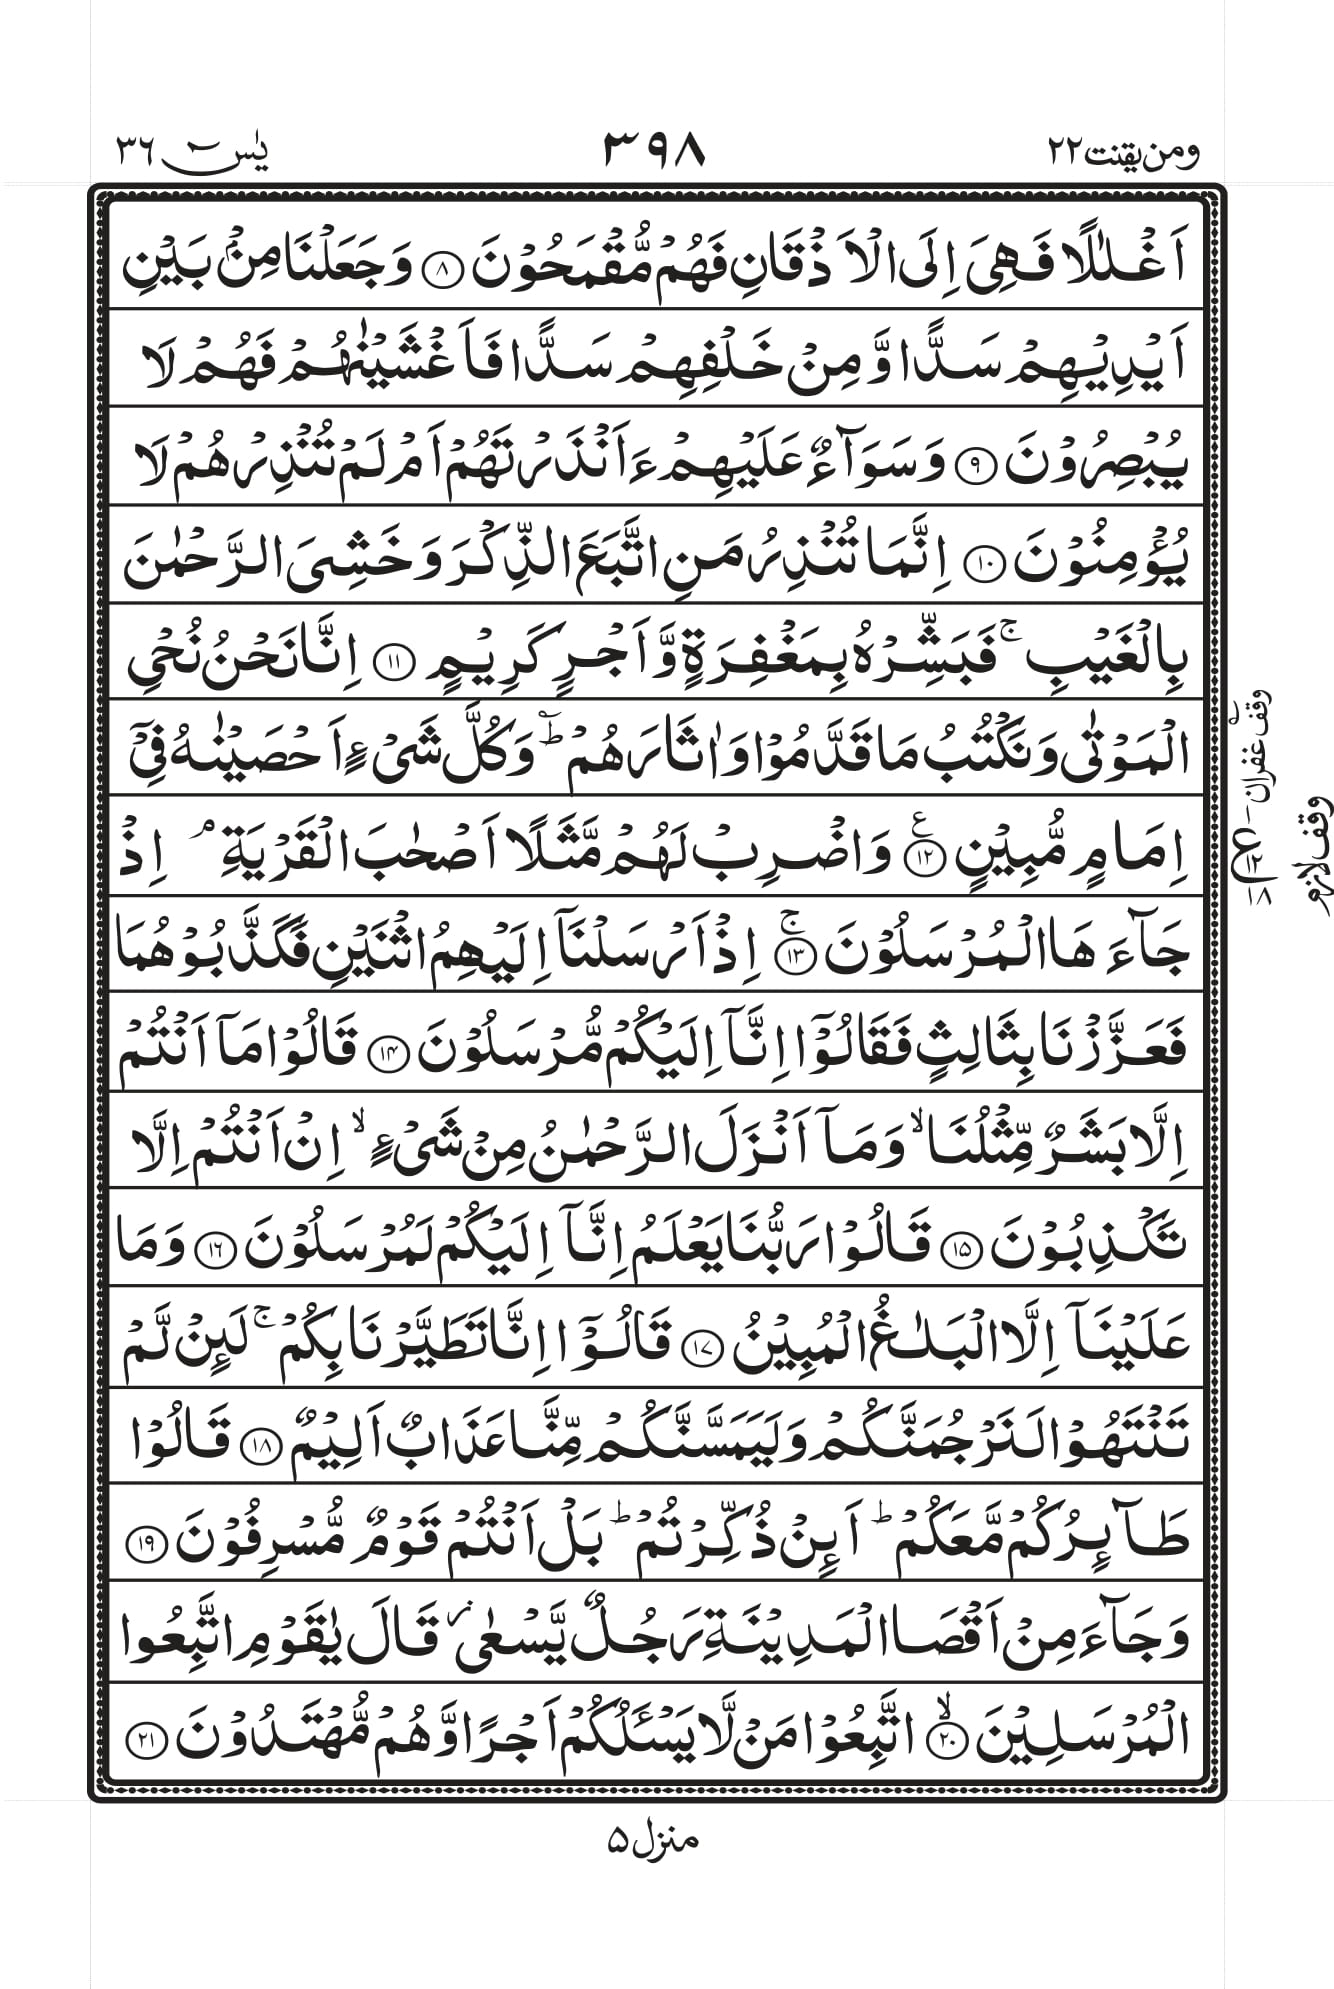 surah yasin transliteration only pdf